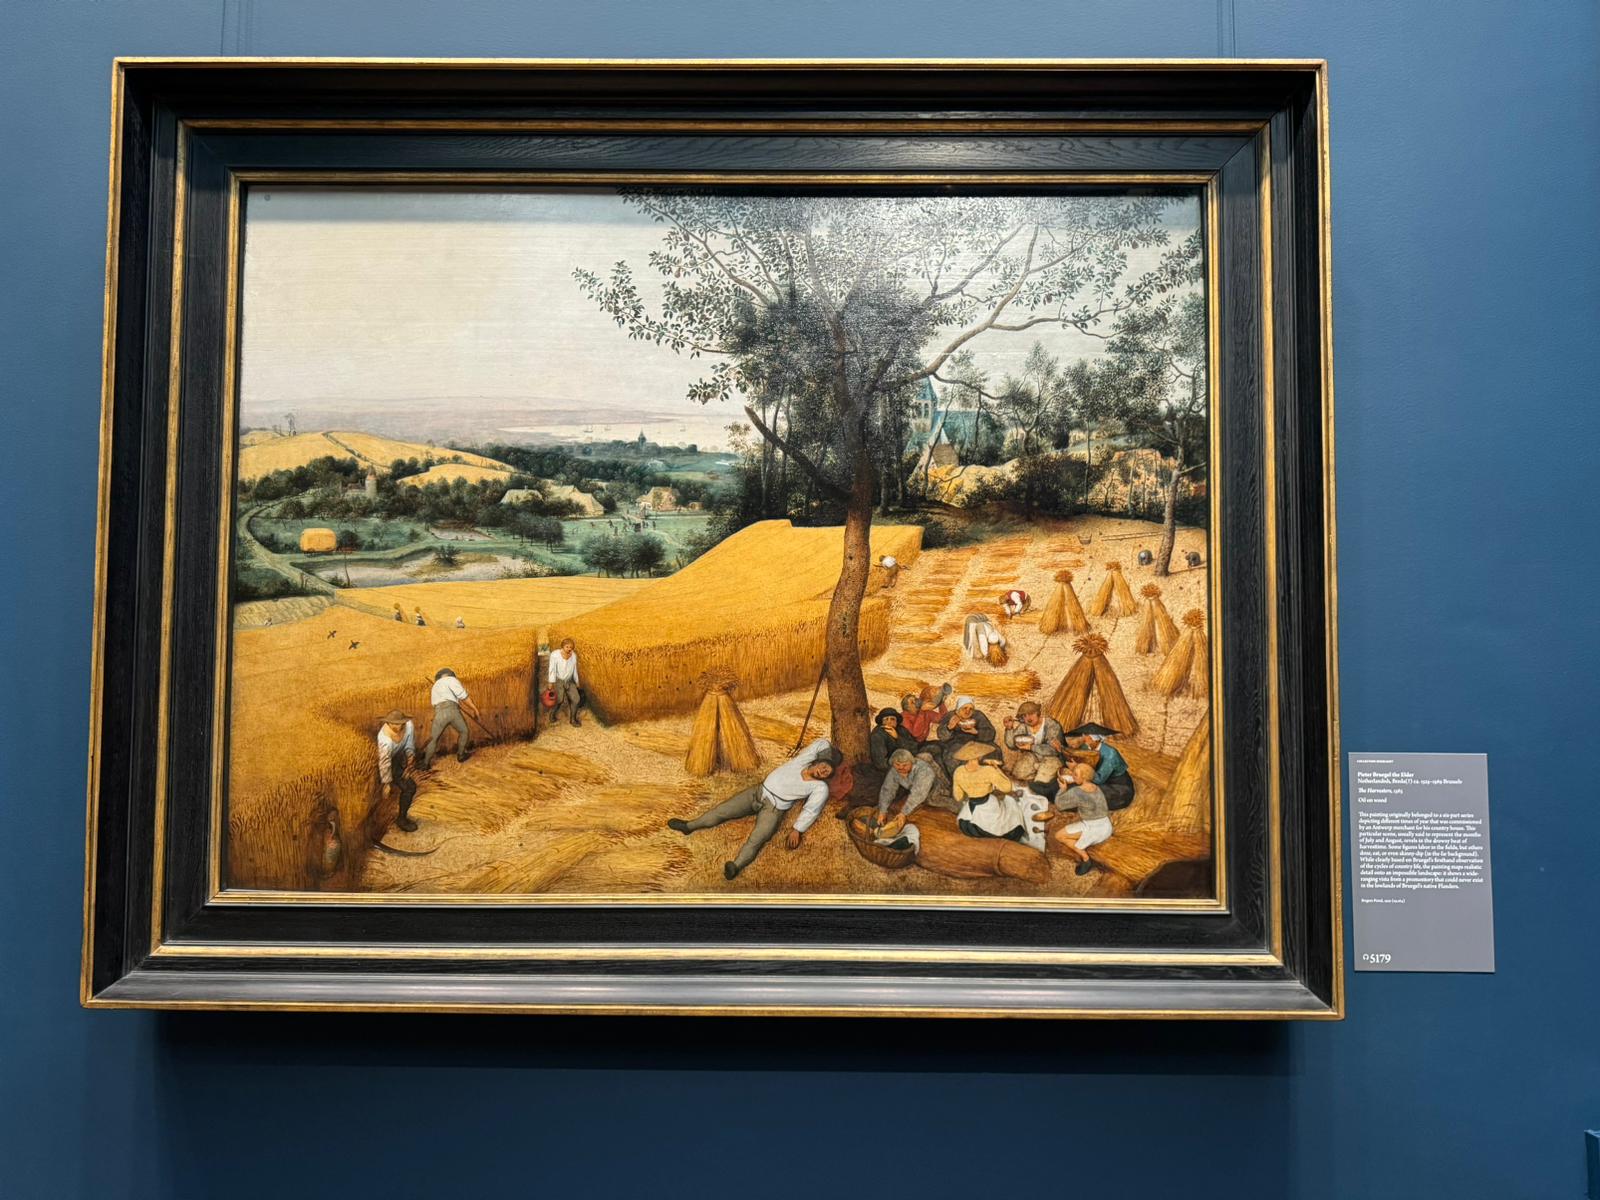 Pieter Bruegel the Elder's "The Harvesters"